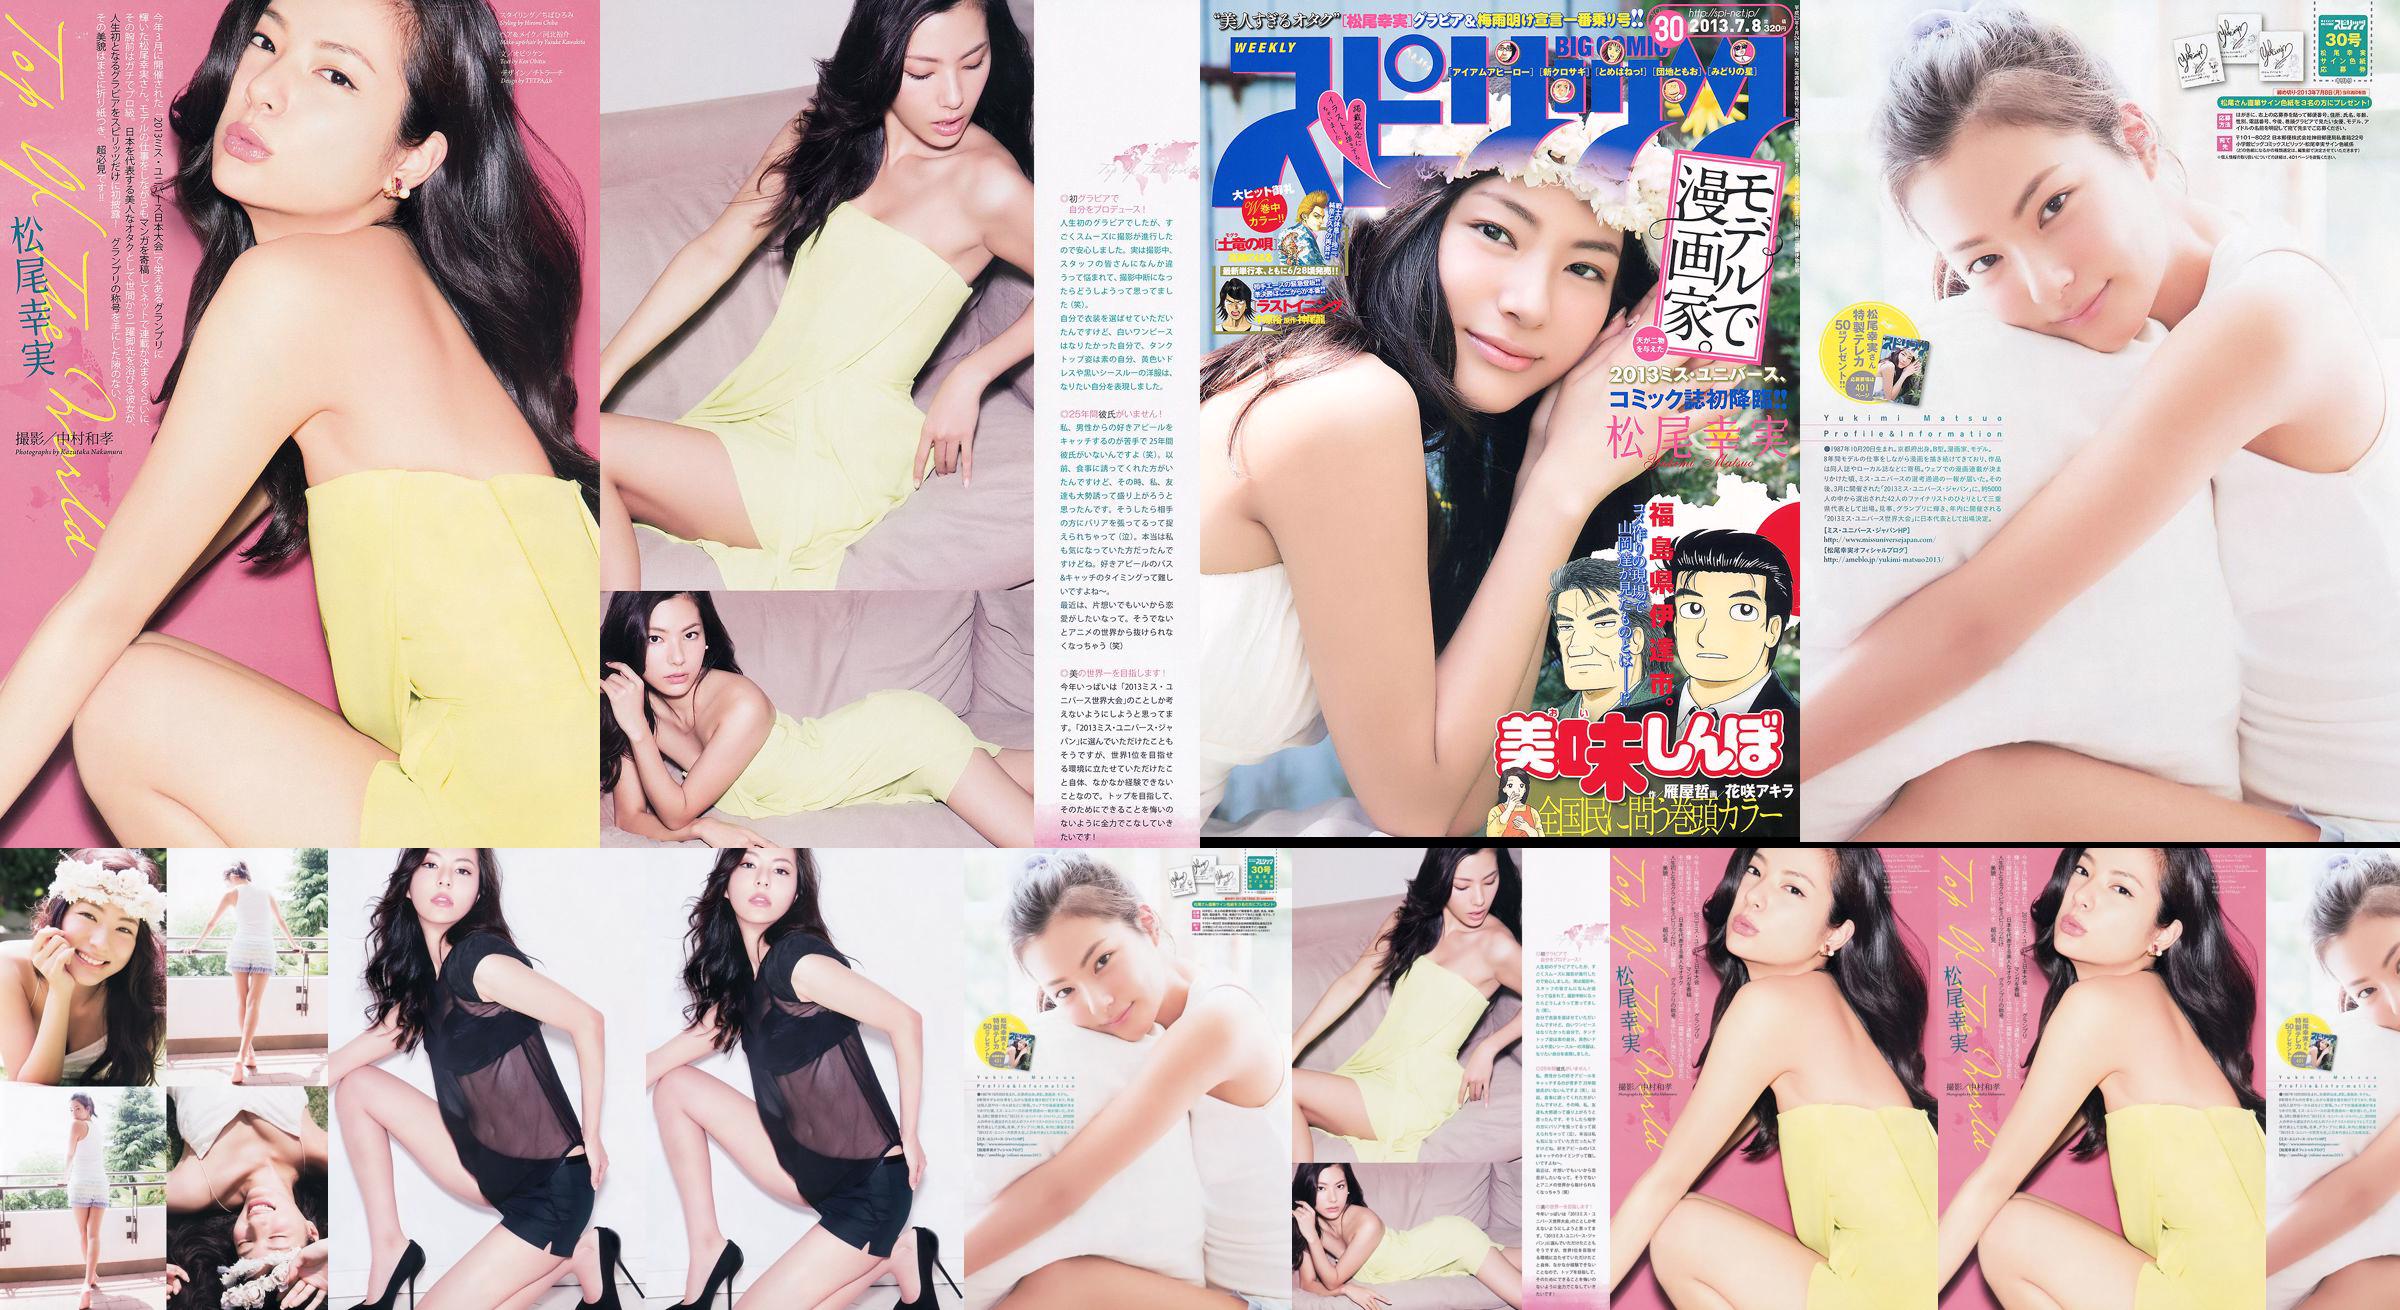 [Weekly Big Comic Spirits] Komi Matsuo 2013 No.30 Photo Magazine No.0db404 Page 1